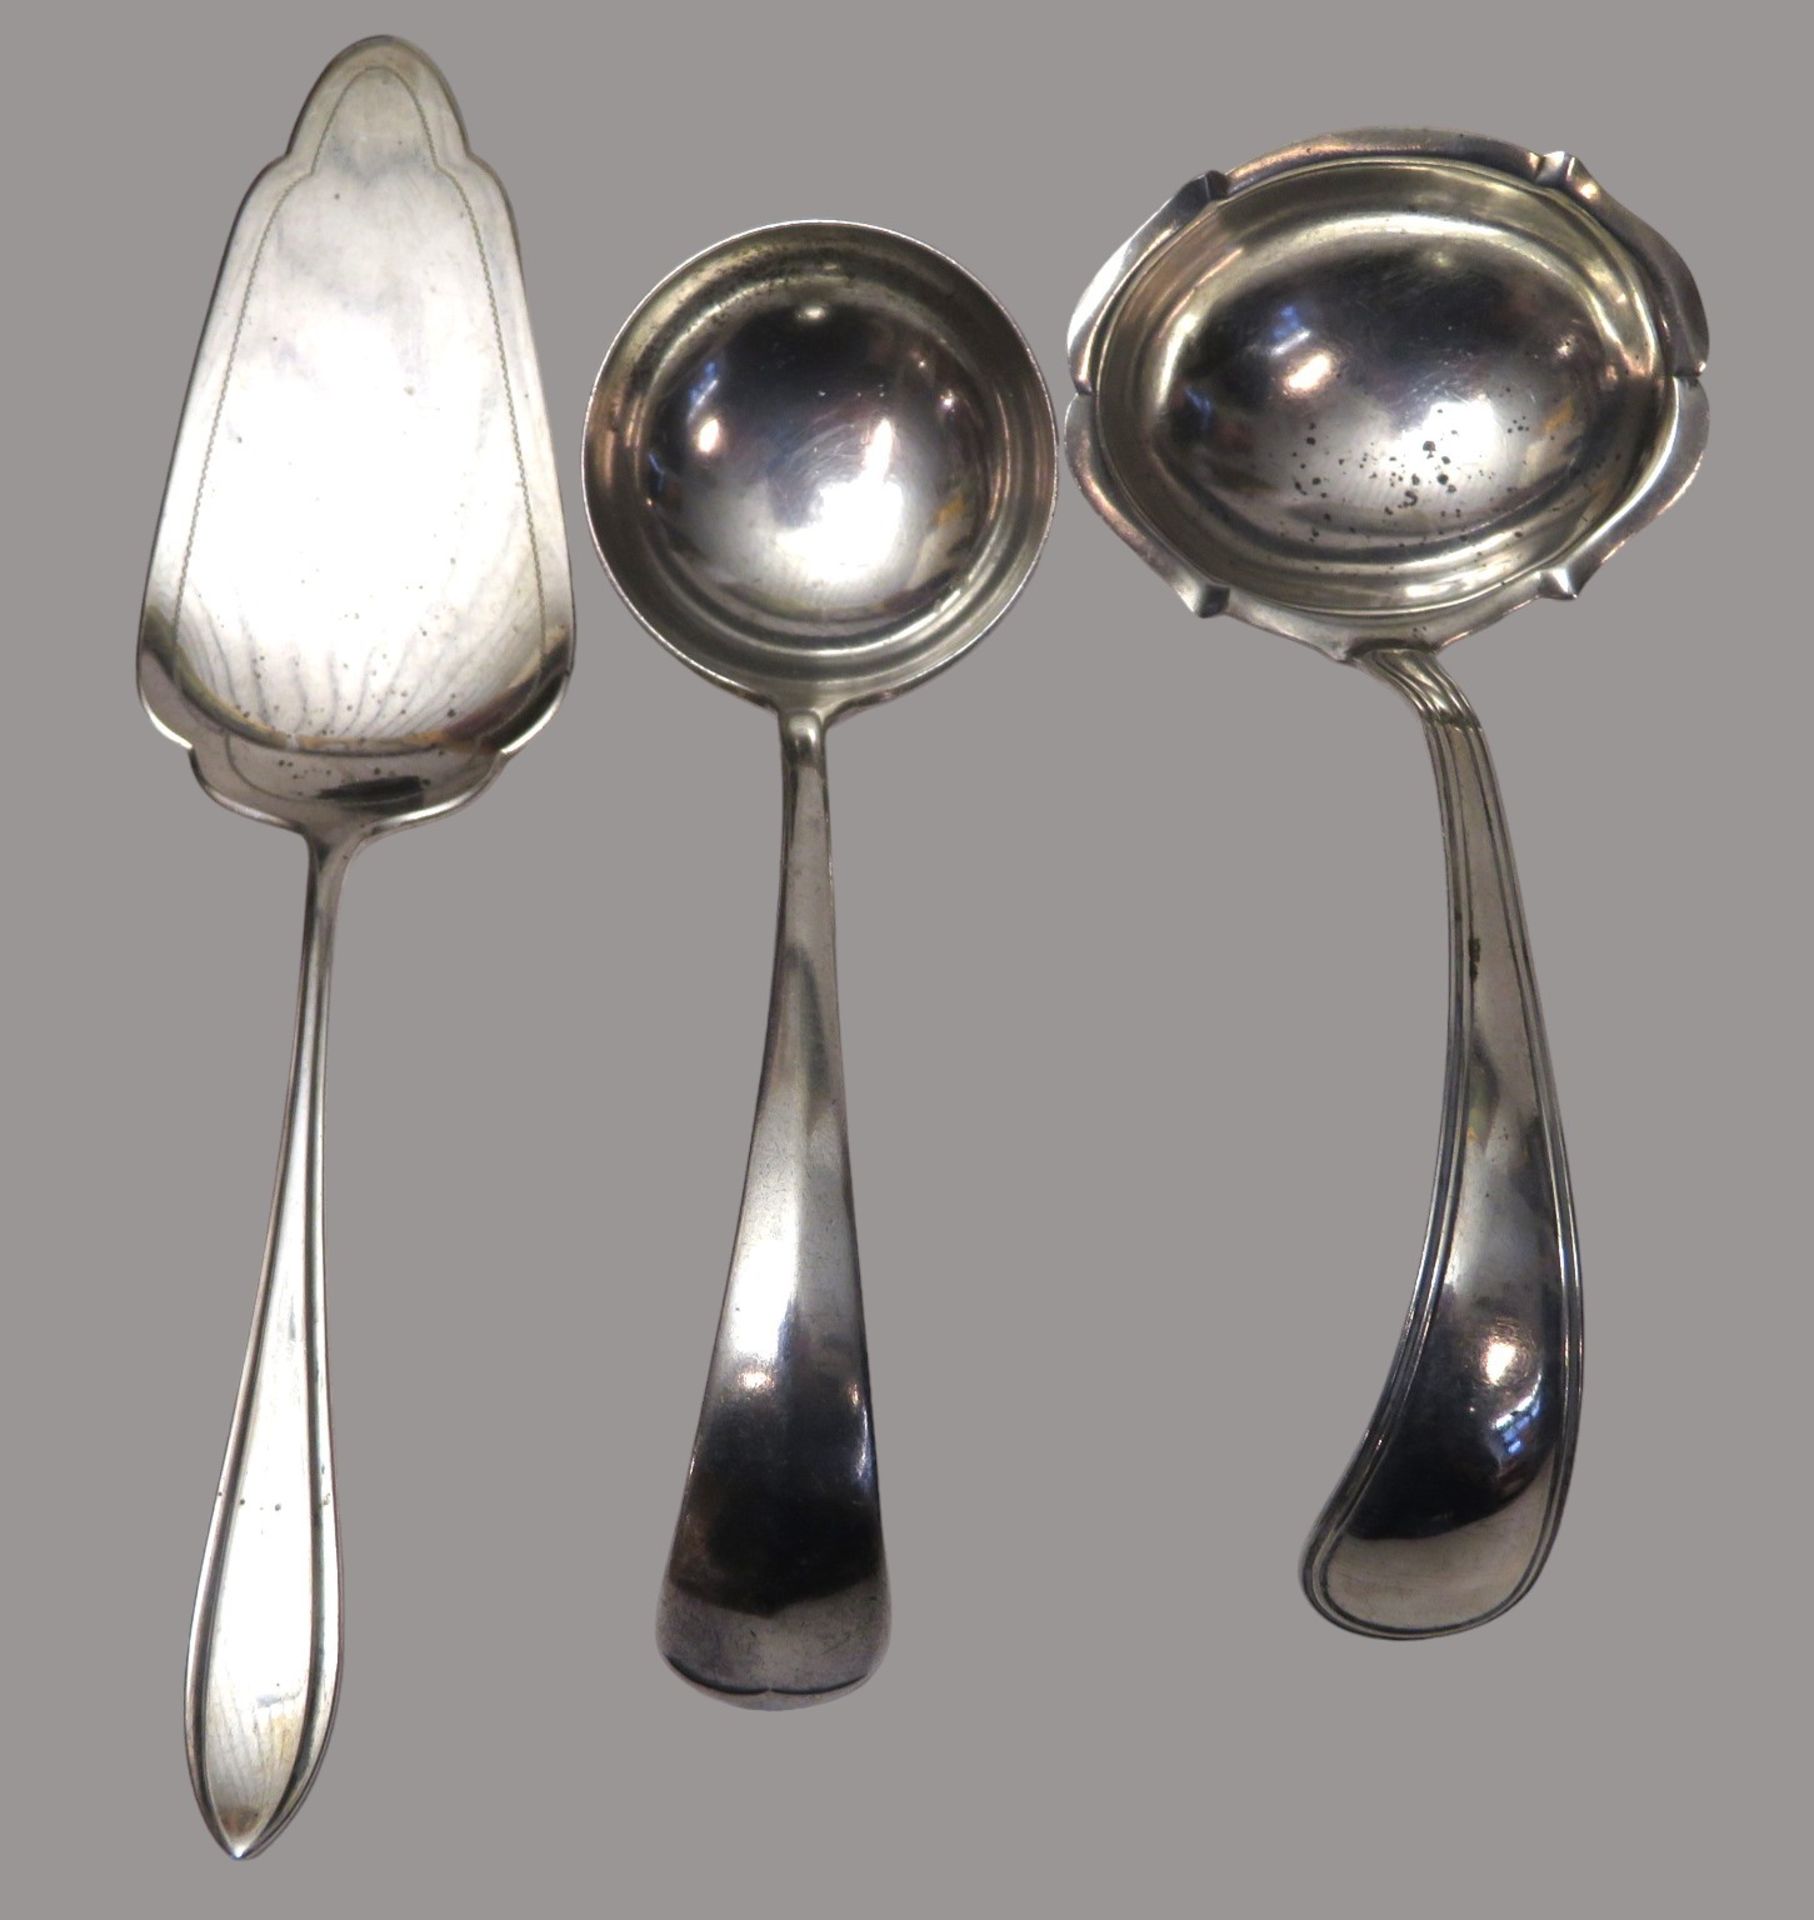 2 Saucenlöffel und Kuchenheber, Silber 835/000, punziert, 173 g, l 16,5/21,5 cm.